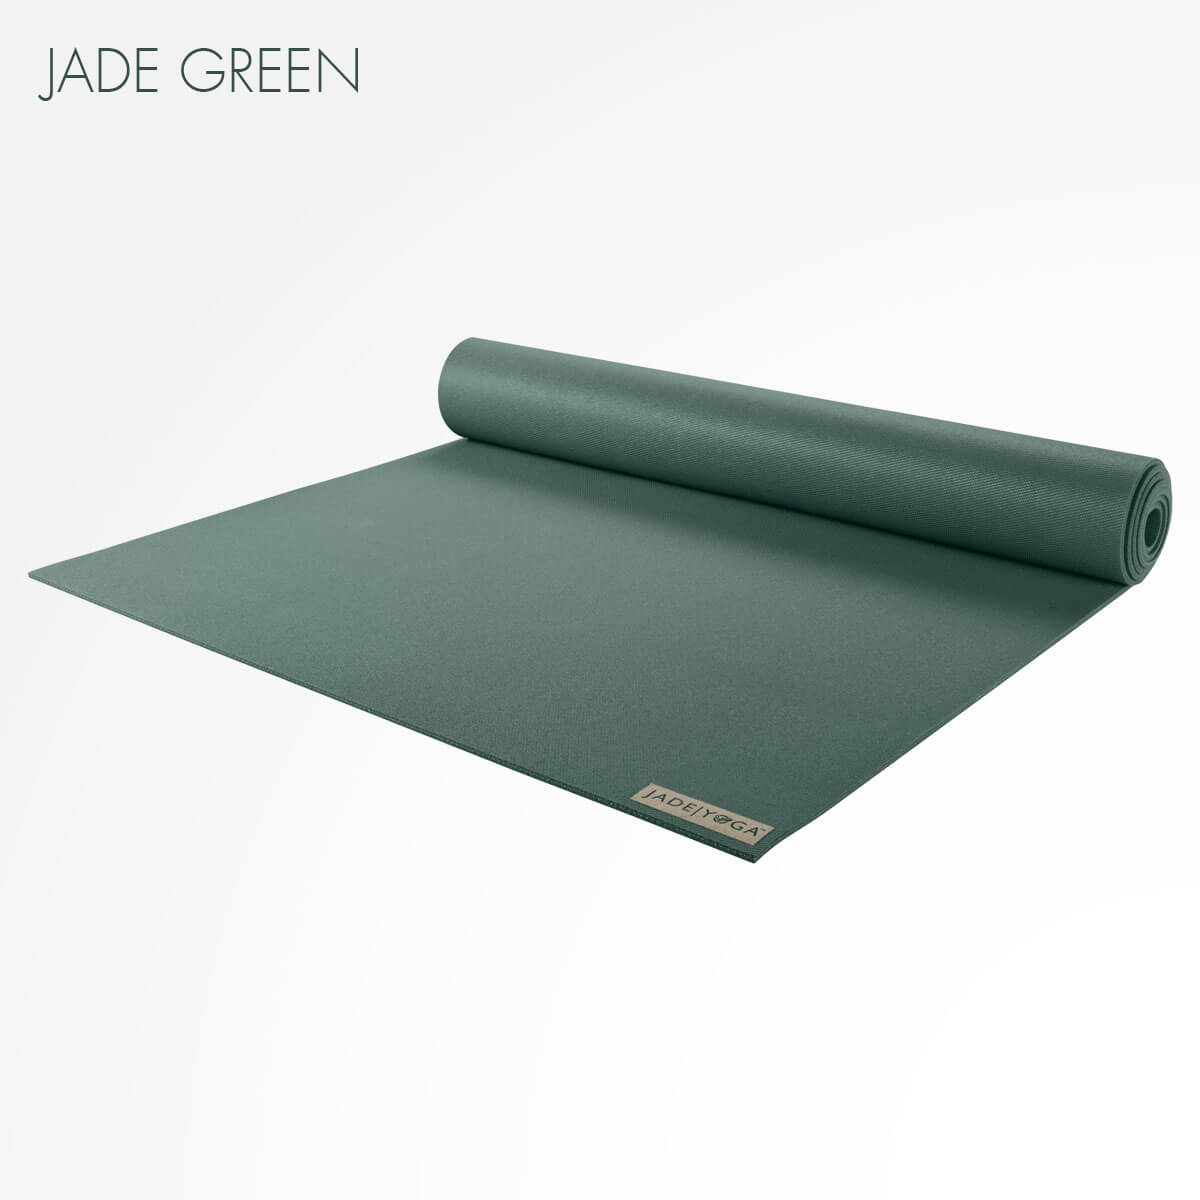 Jade Yoga Travel Mat - 3mm natural rubber lightweight mat